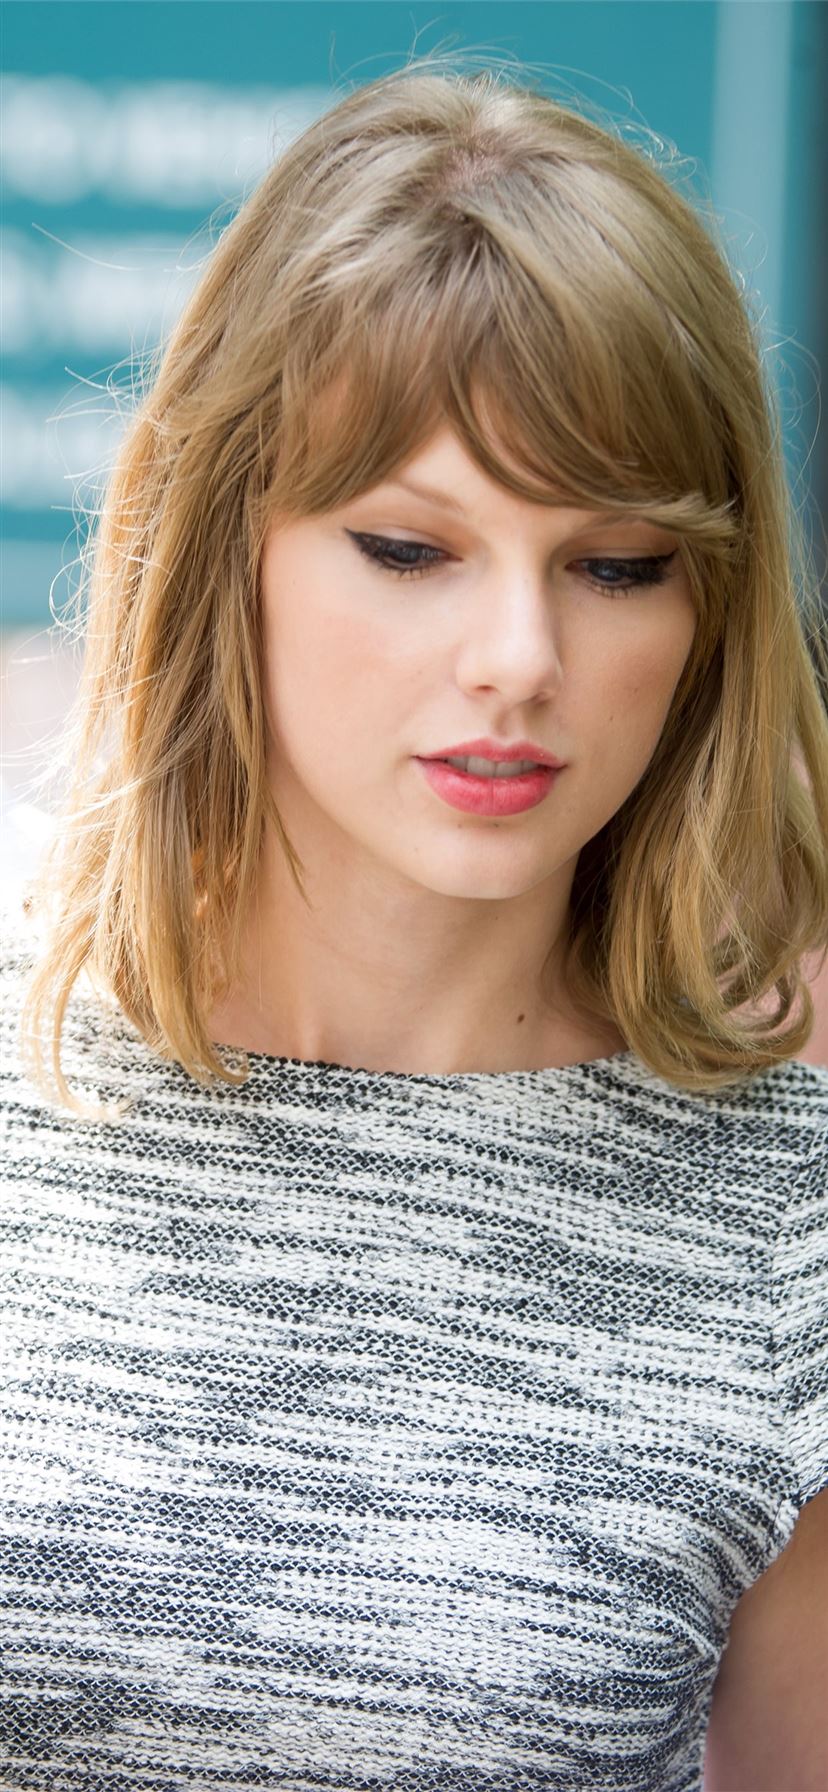 Best Taylor Swift Iphone 11 Wallpapers Hd Ilikewallpaper